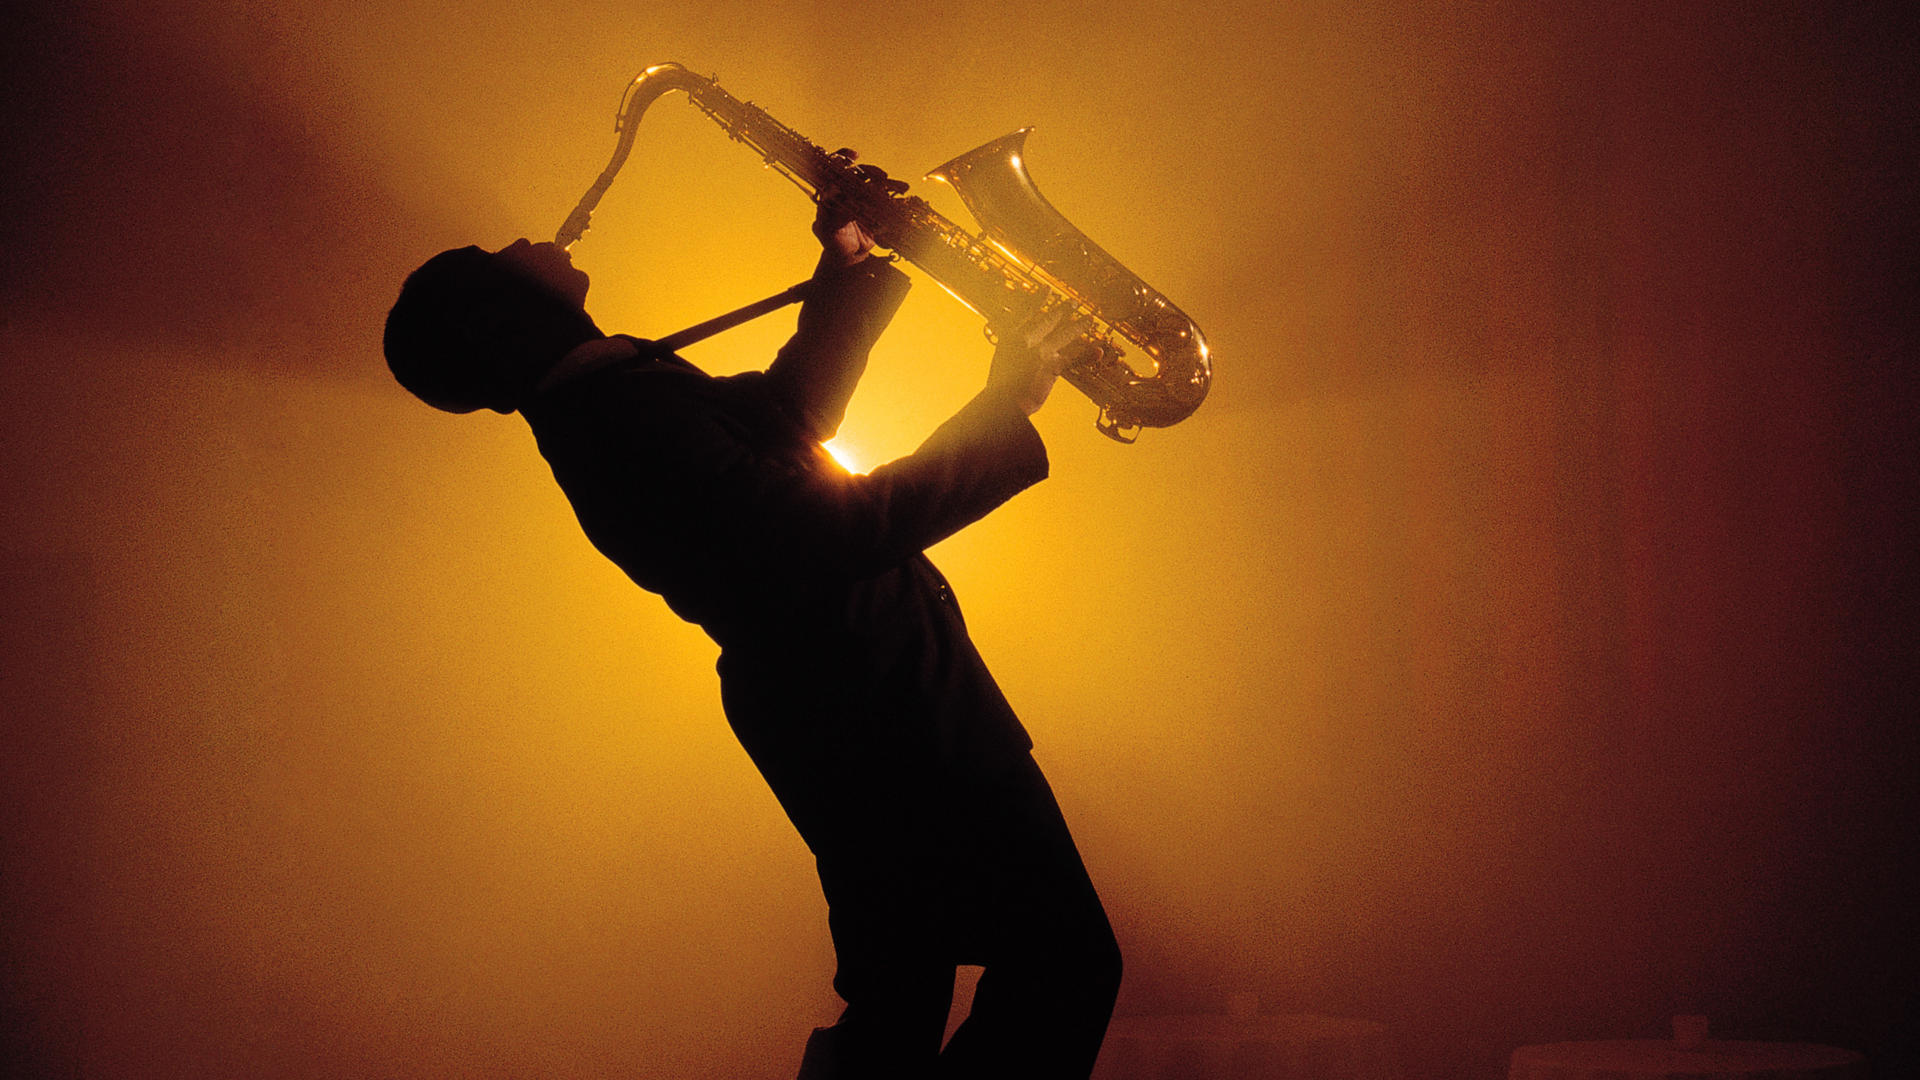 Jazz Saxophone Wallpaper Image